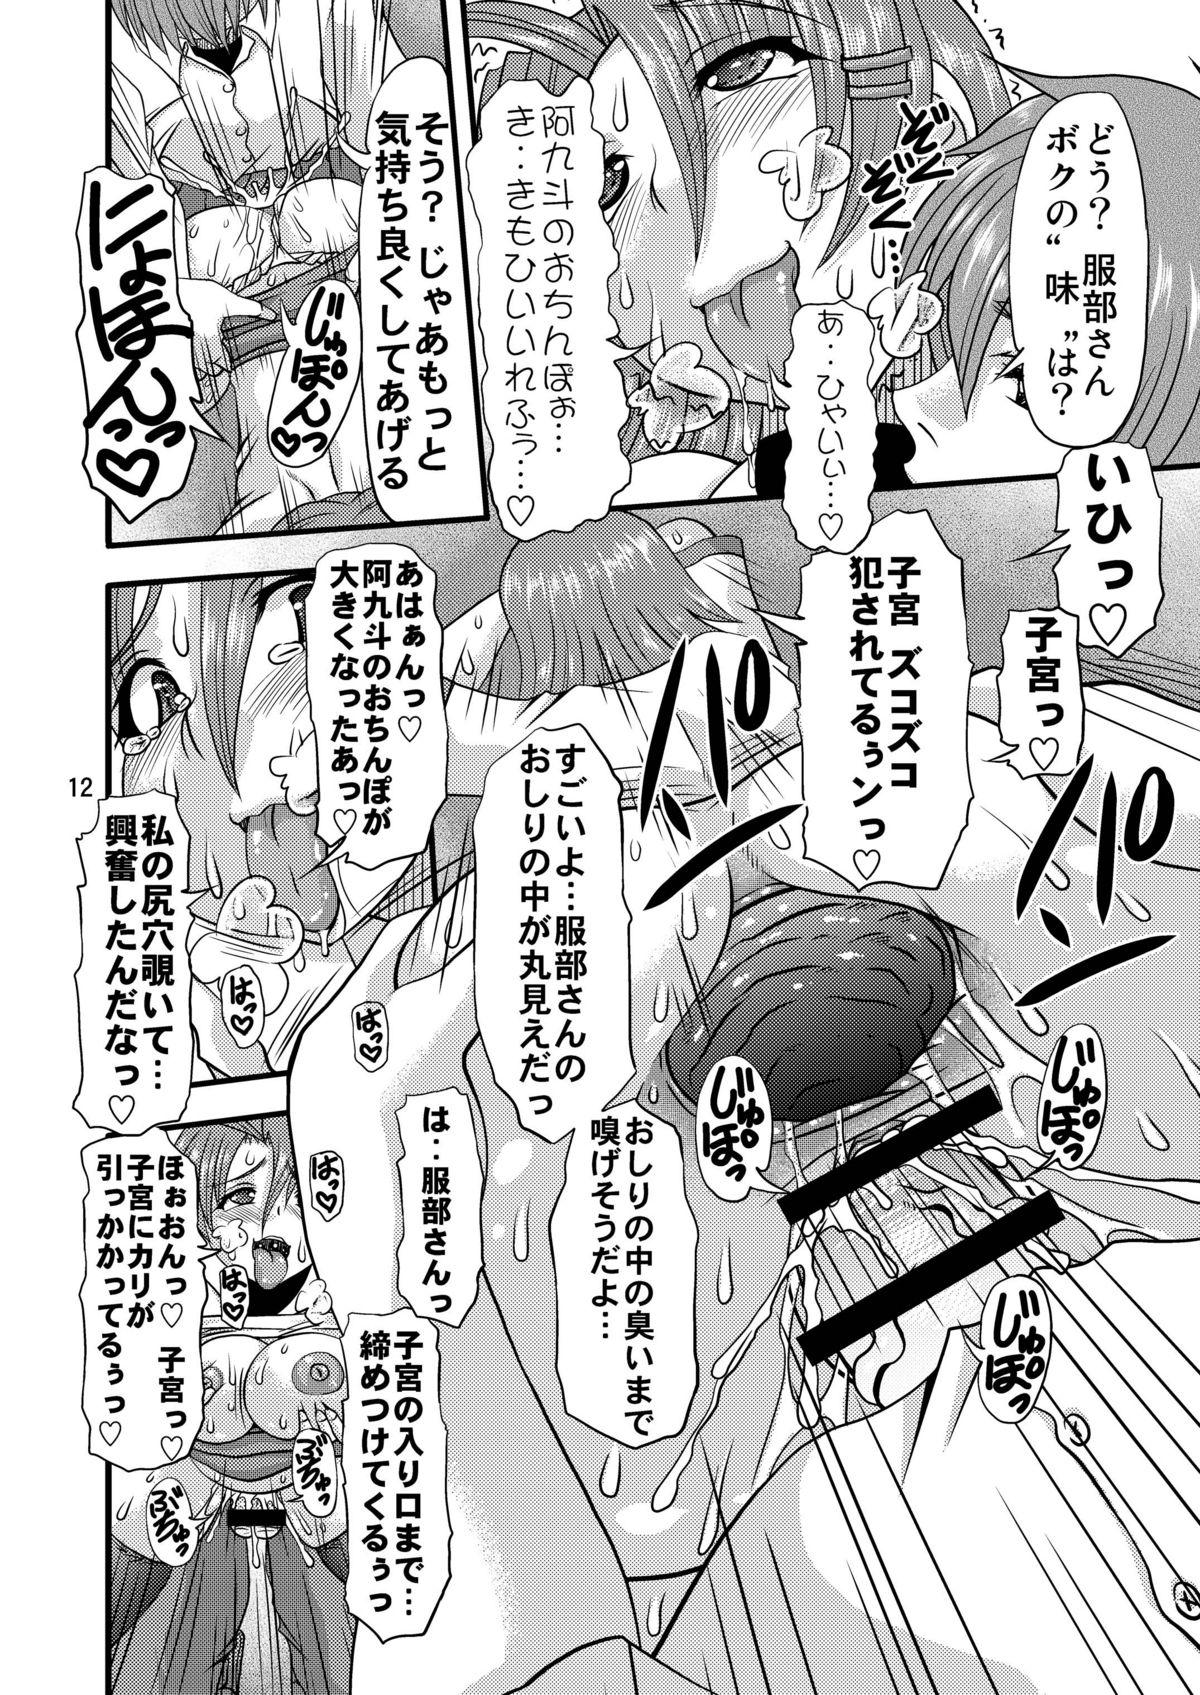 Camporn Fundoshi Momojiri Musume - Ichiban ushiro no daimaou Bunduda - Page 12